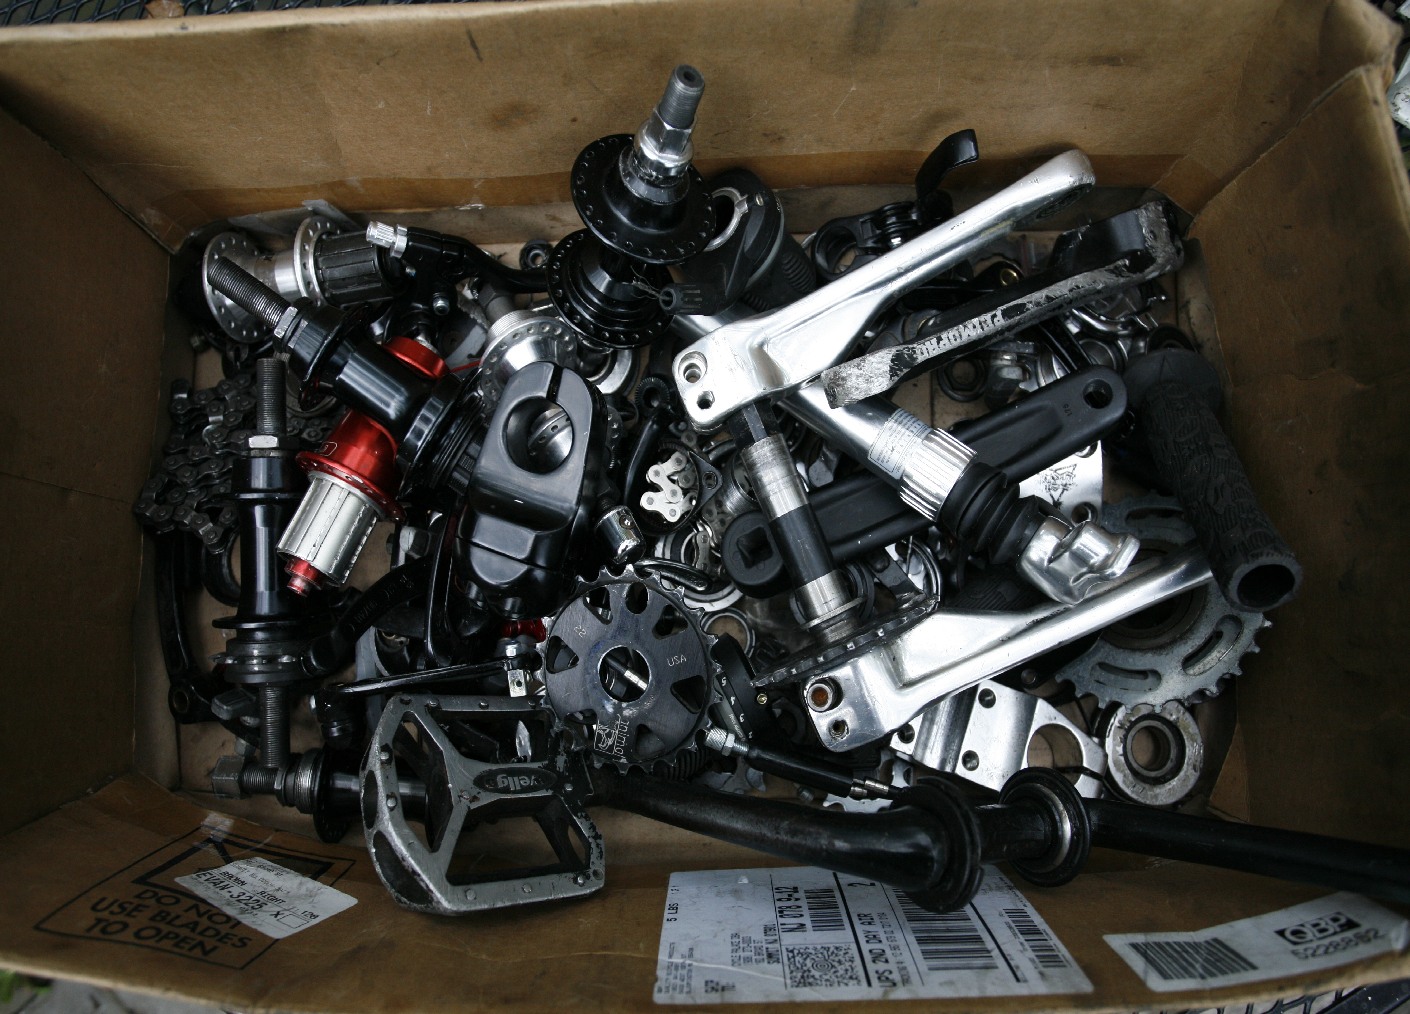 BMX parts